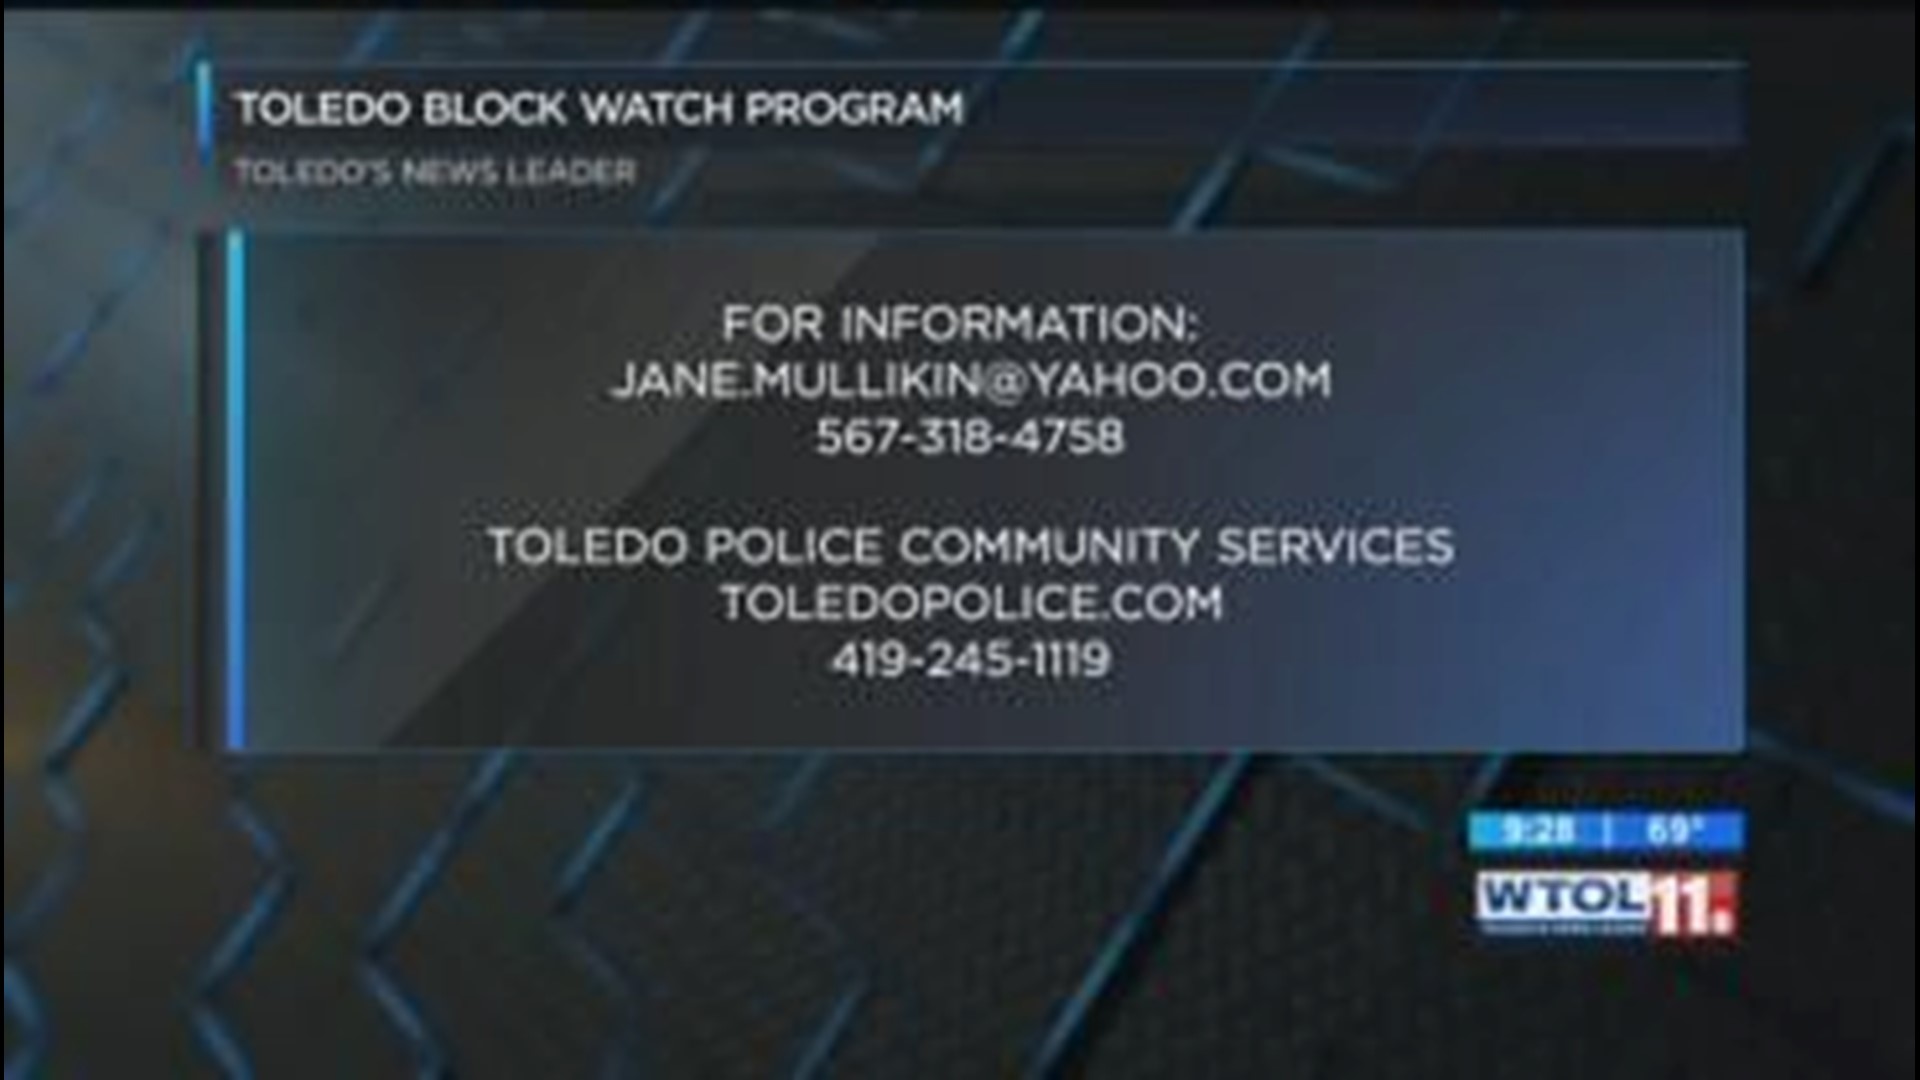 Toledo Block Watch program